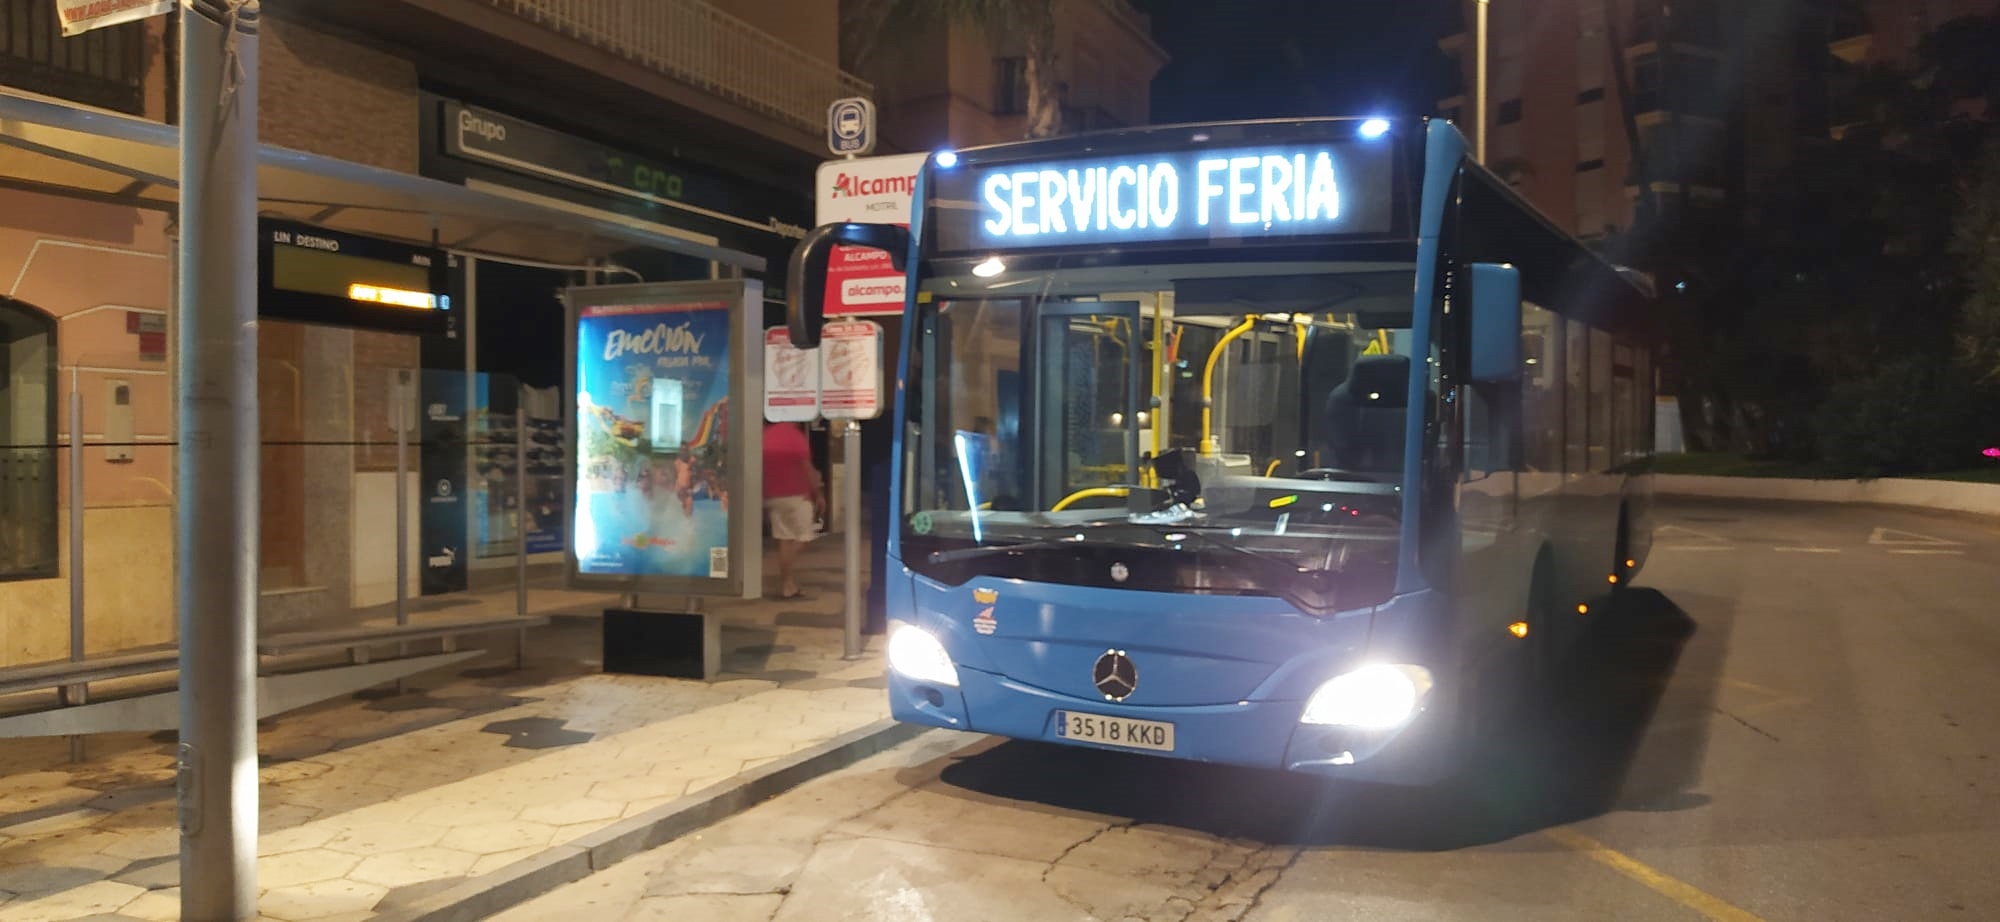 Habrá un servicio especial de transporte urbano para la Feria de Noche en Almuñécar